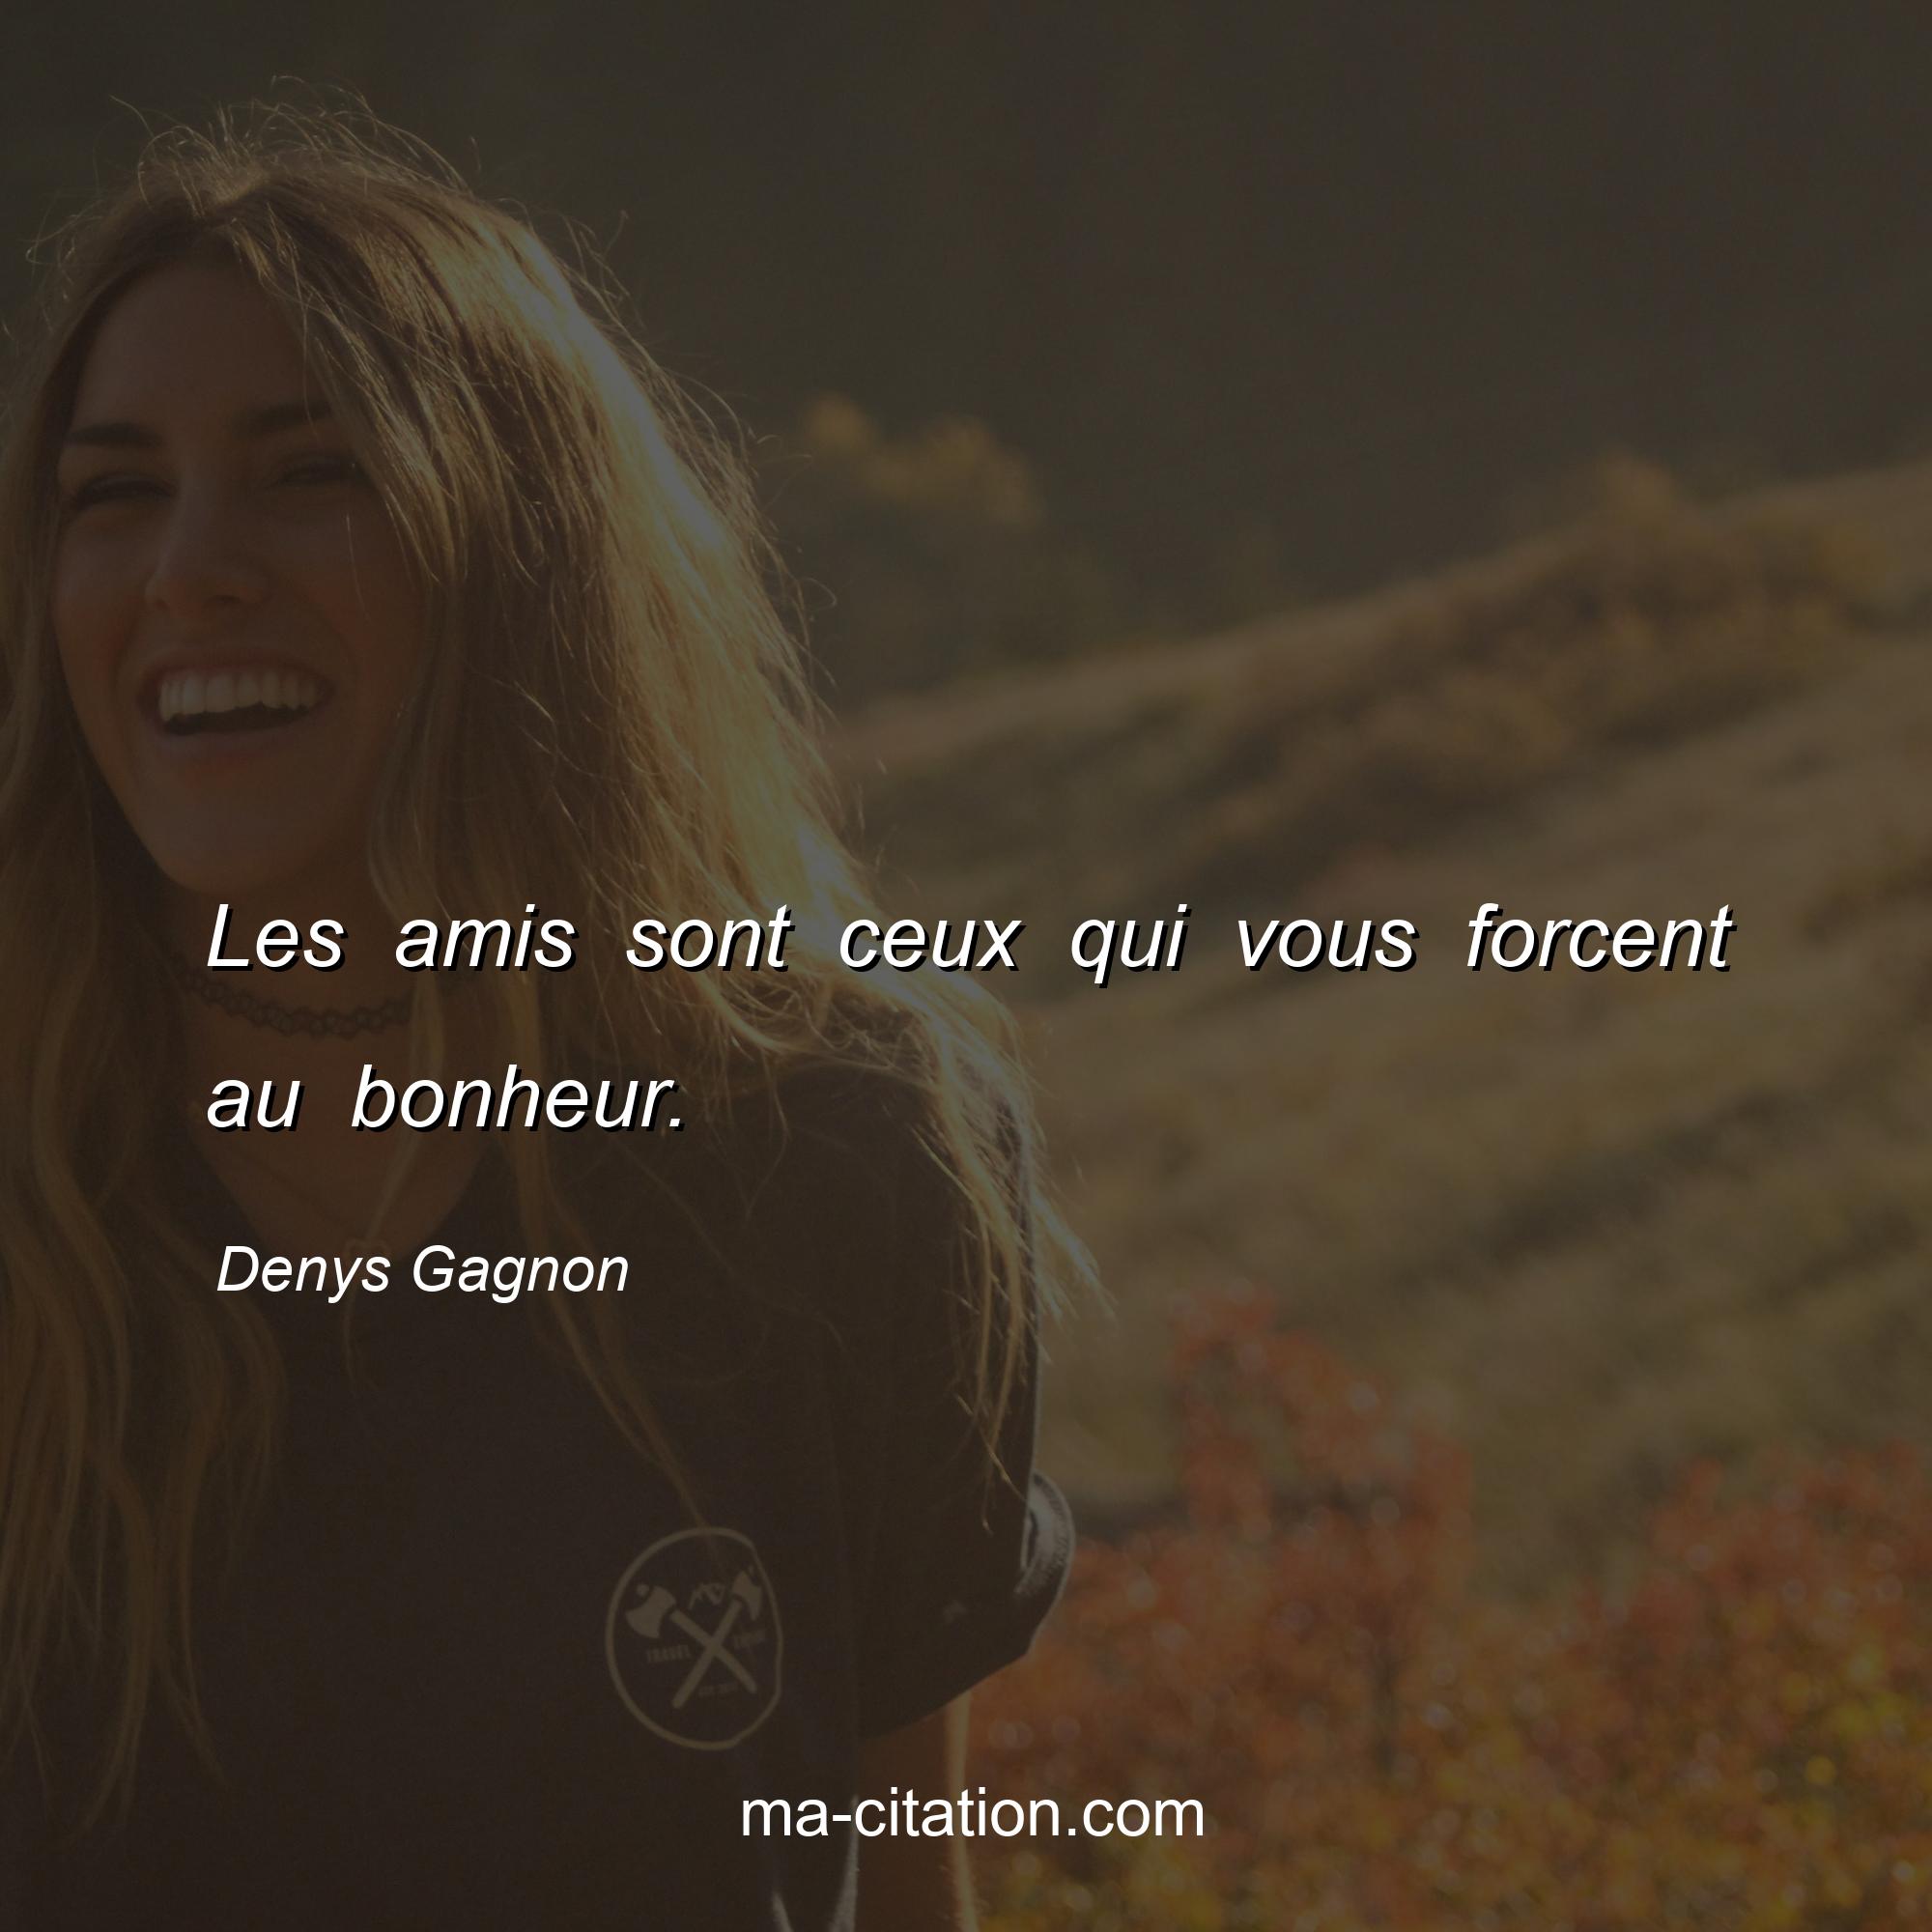 Denys Gagnon : Les amis sont ceux qui vous forcent au bonheur.